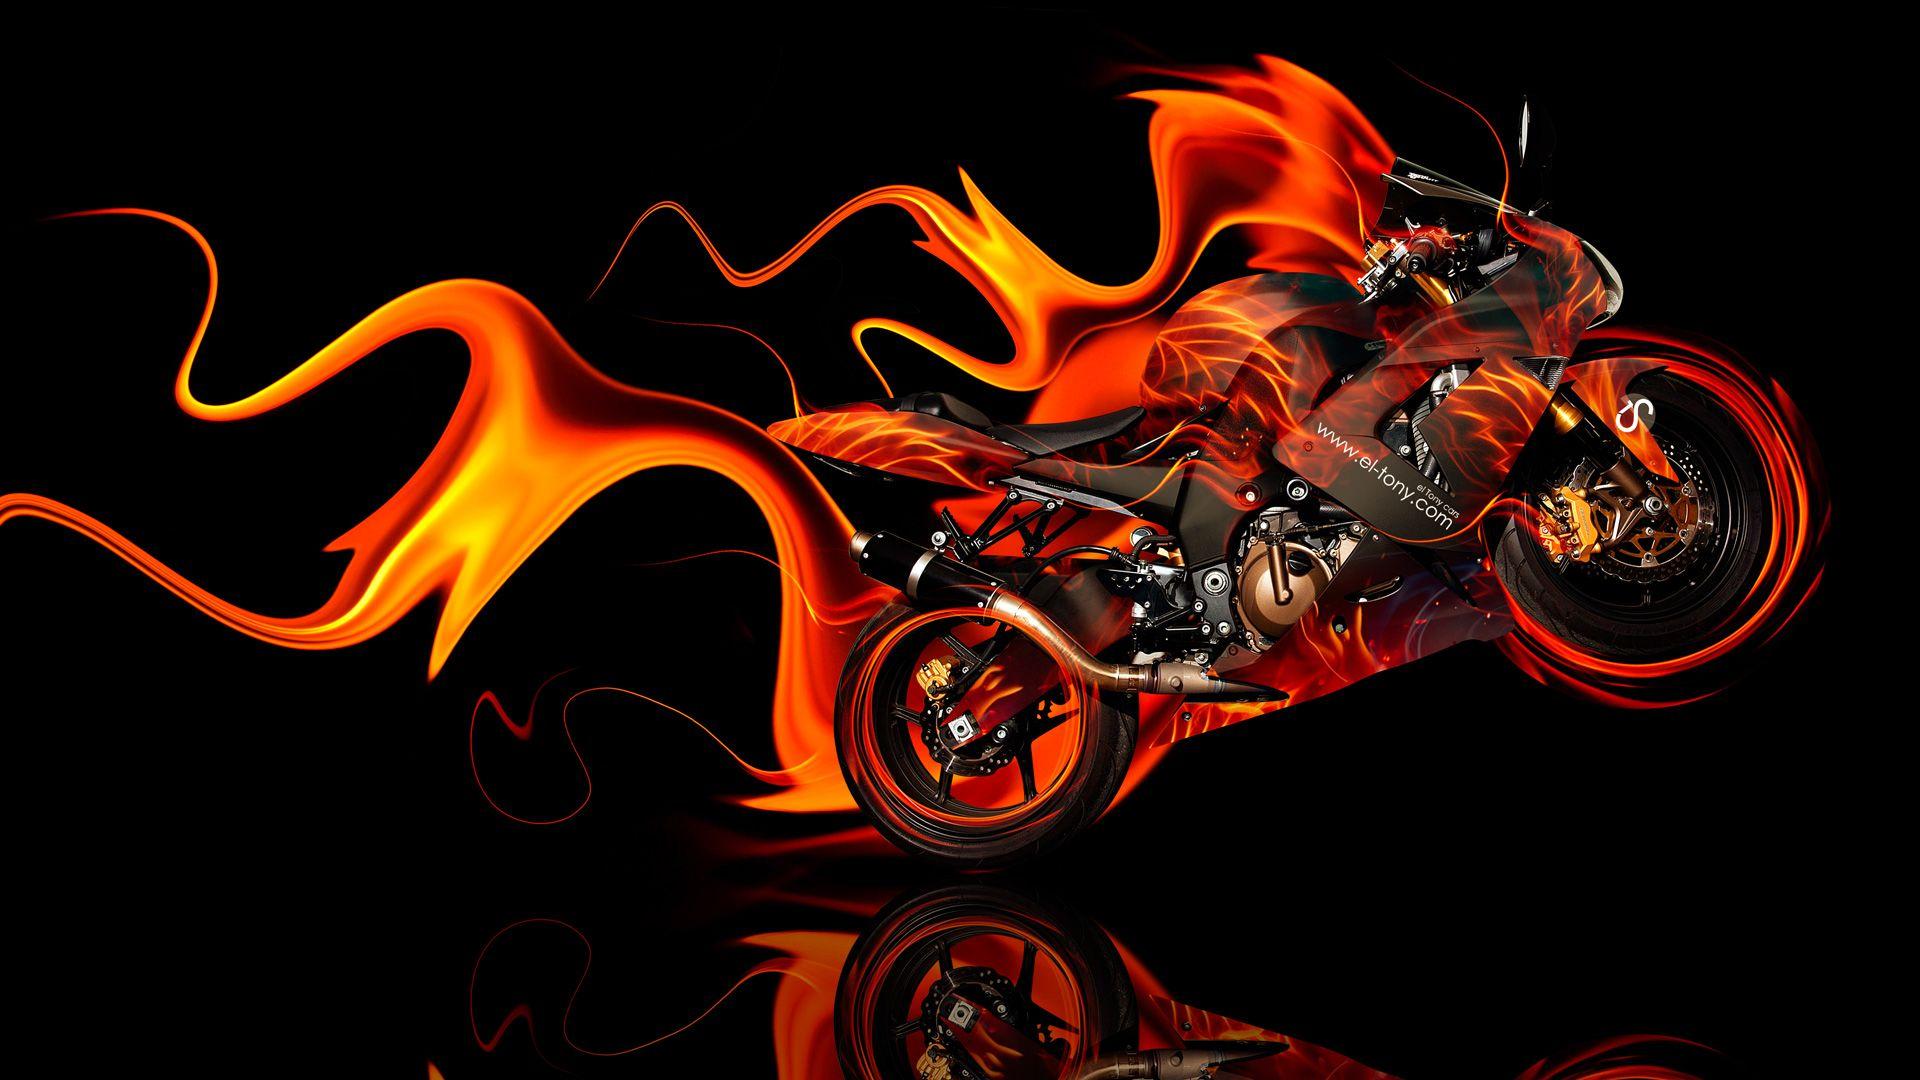 Moto Kawasaki Side Super Fire Abstract Car 2014 Photoshop HD